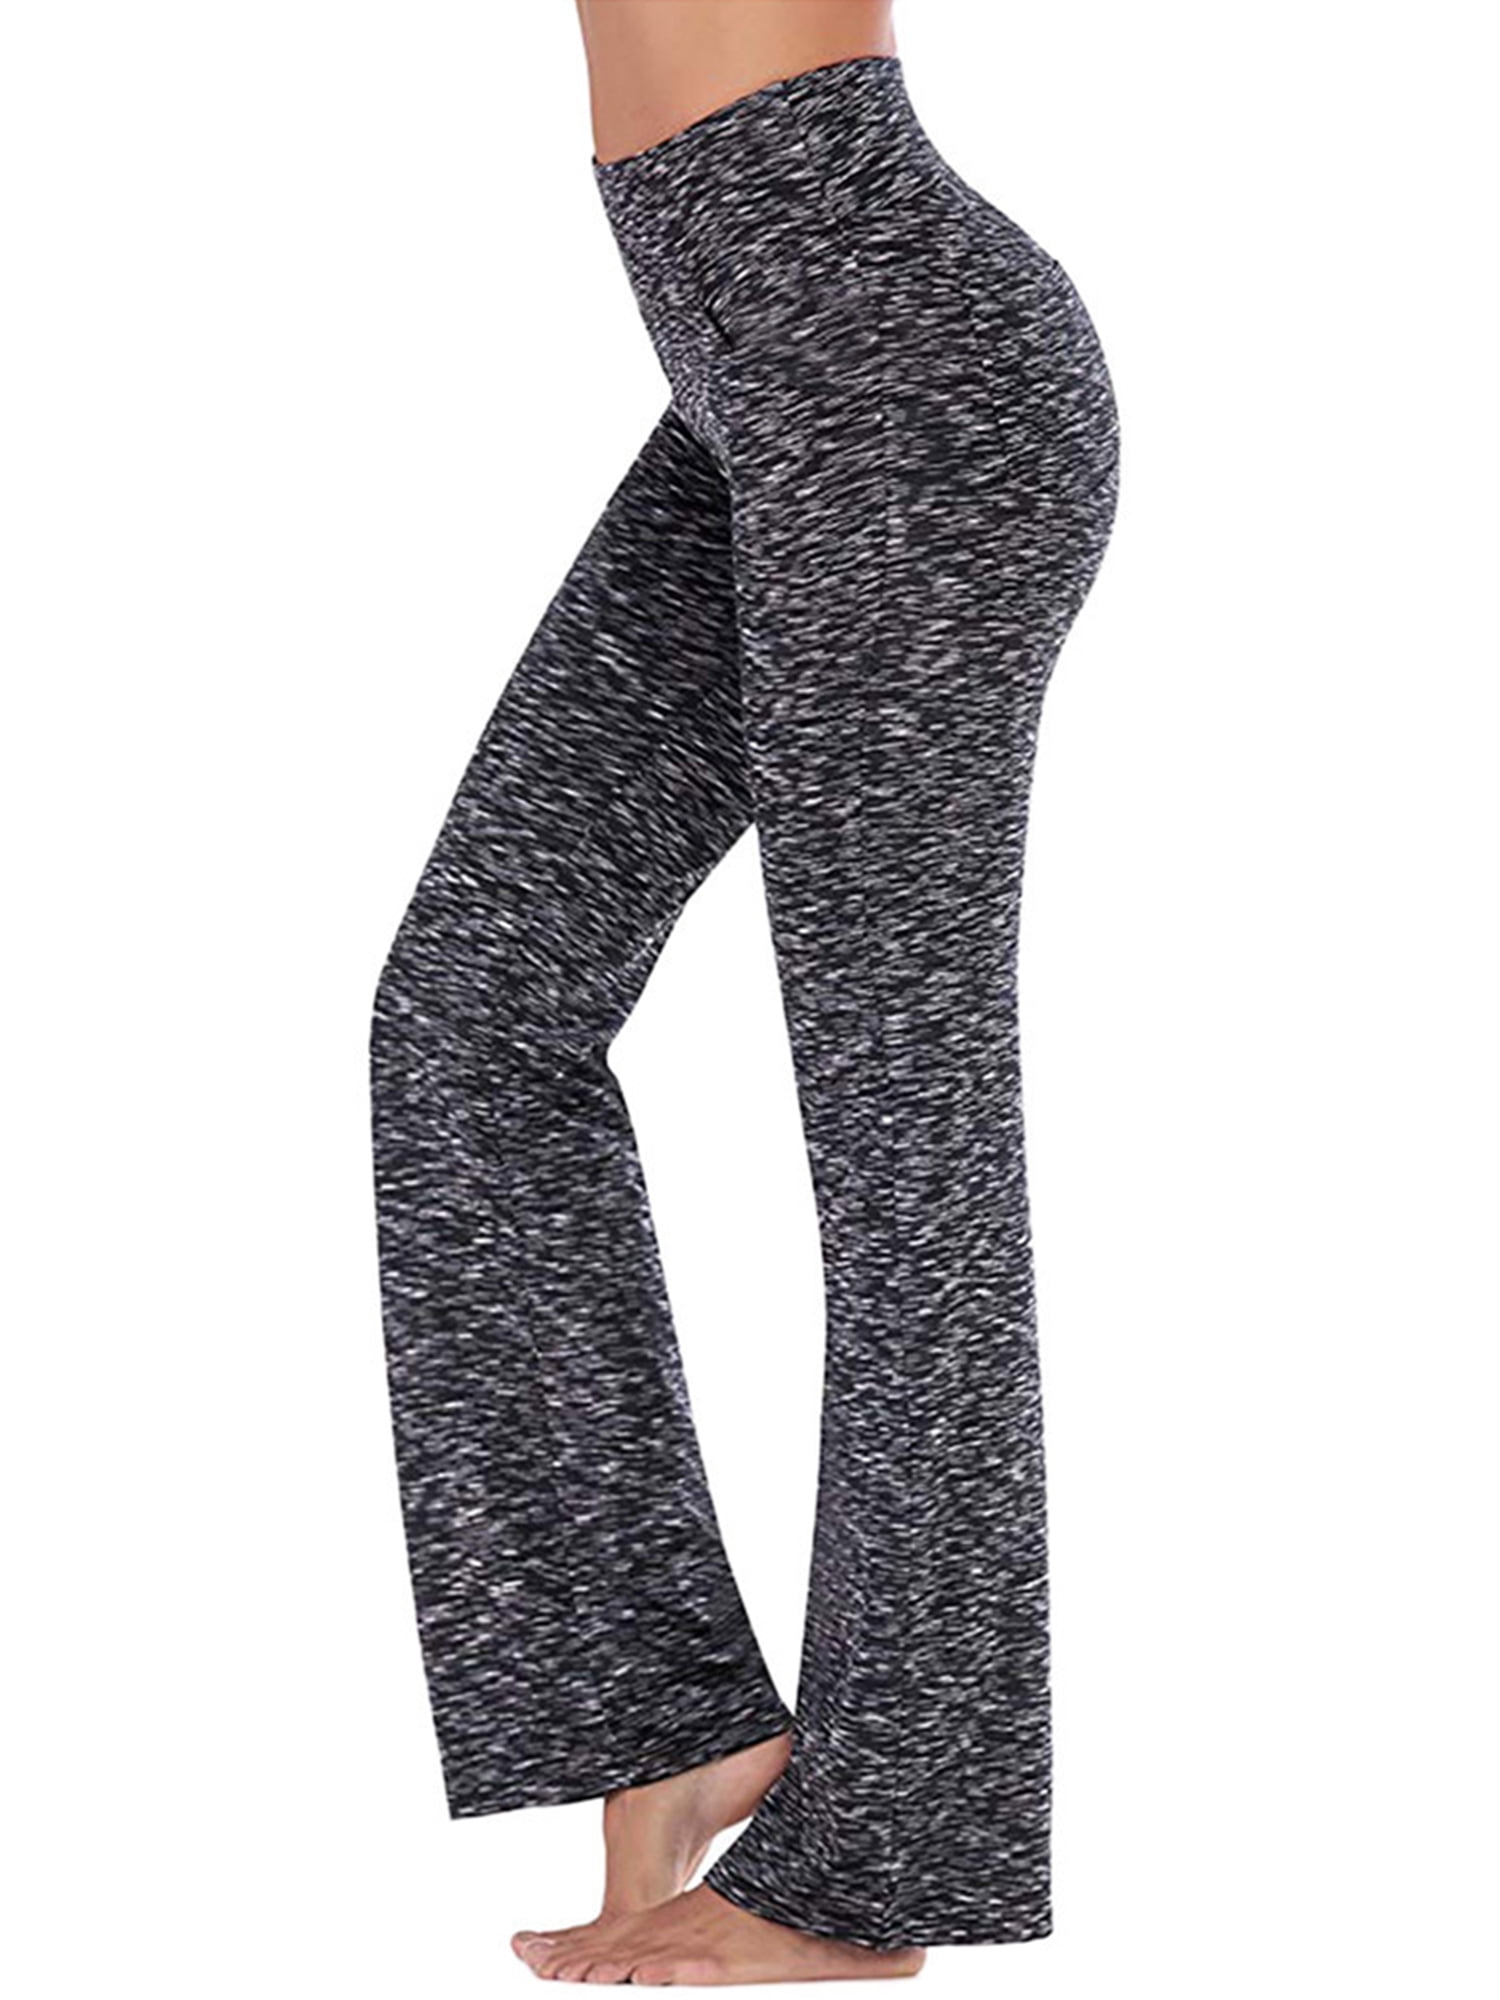 29''/31''/33''/35'' Plus Size Women's Bootcut Yoga Pants Wide Leg